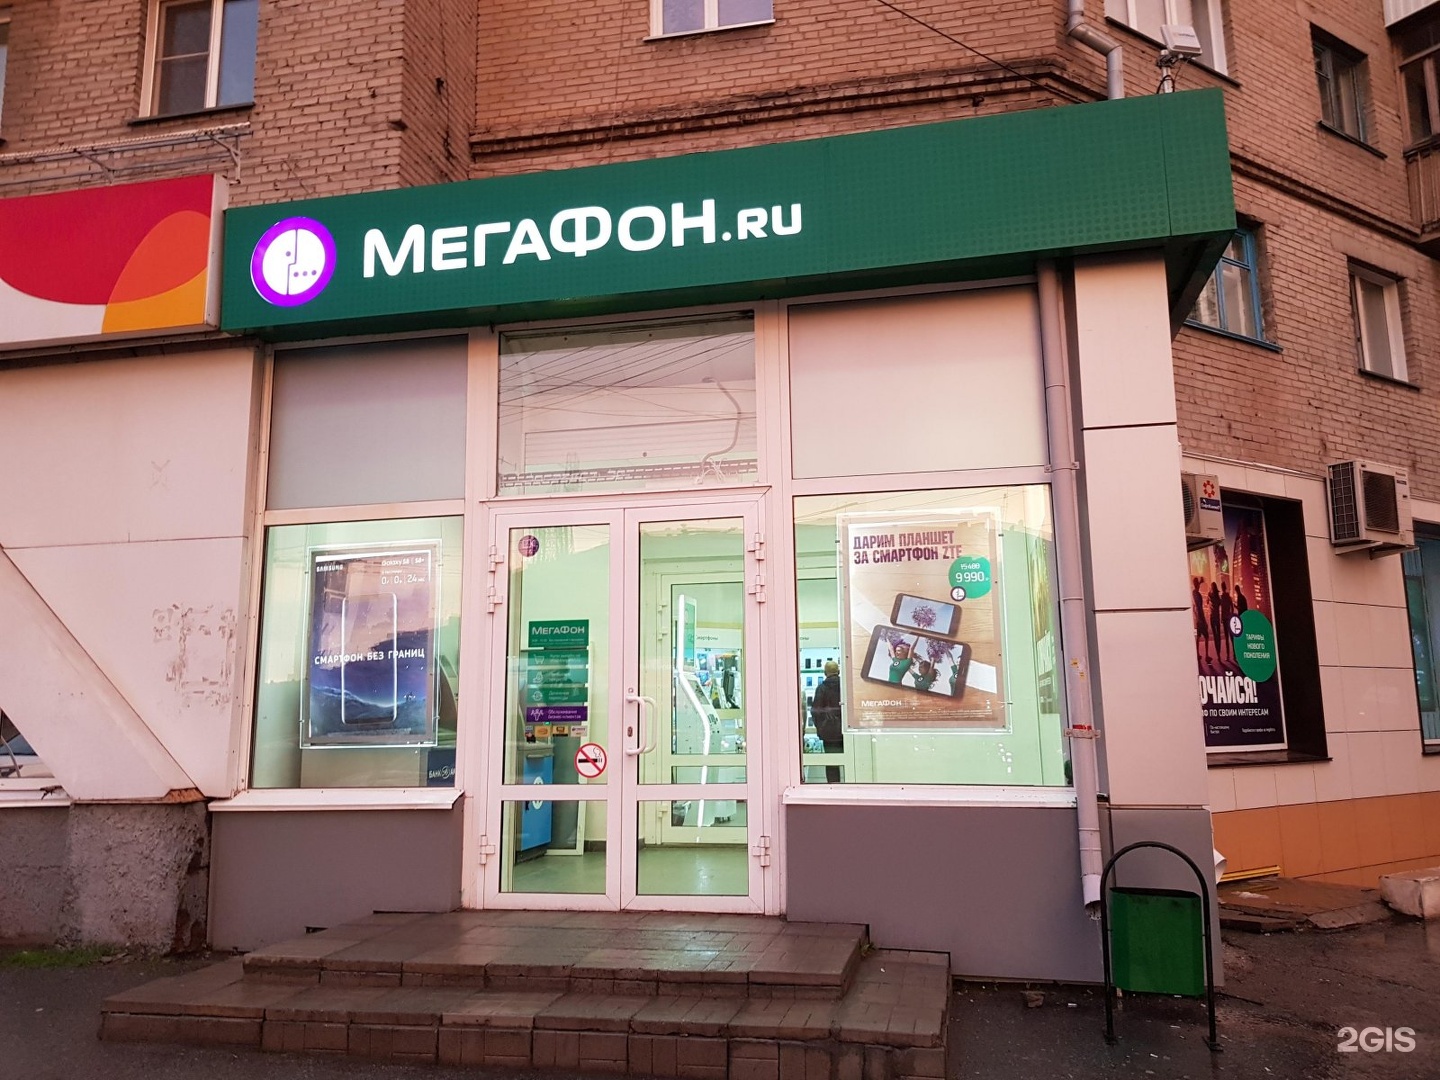 Мегафон новосибирск телефон. Салон МЕГАФОН. МЕГАФОН Новосибирск. Магазин МЕГАФОН В Новосибирске. Салон МЕГАФОН рядом.